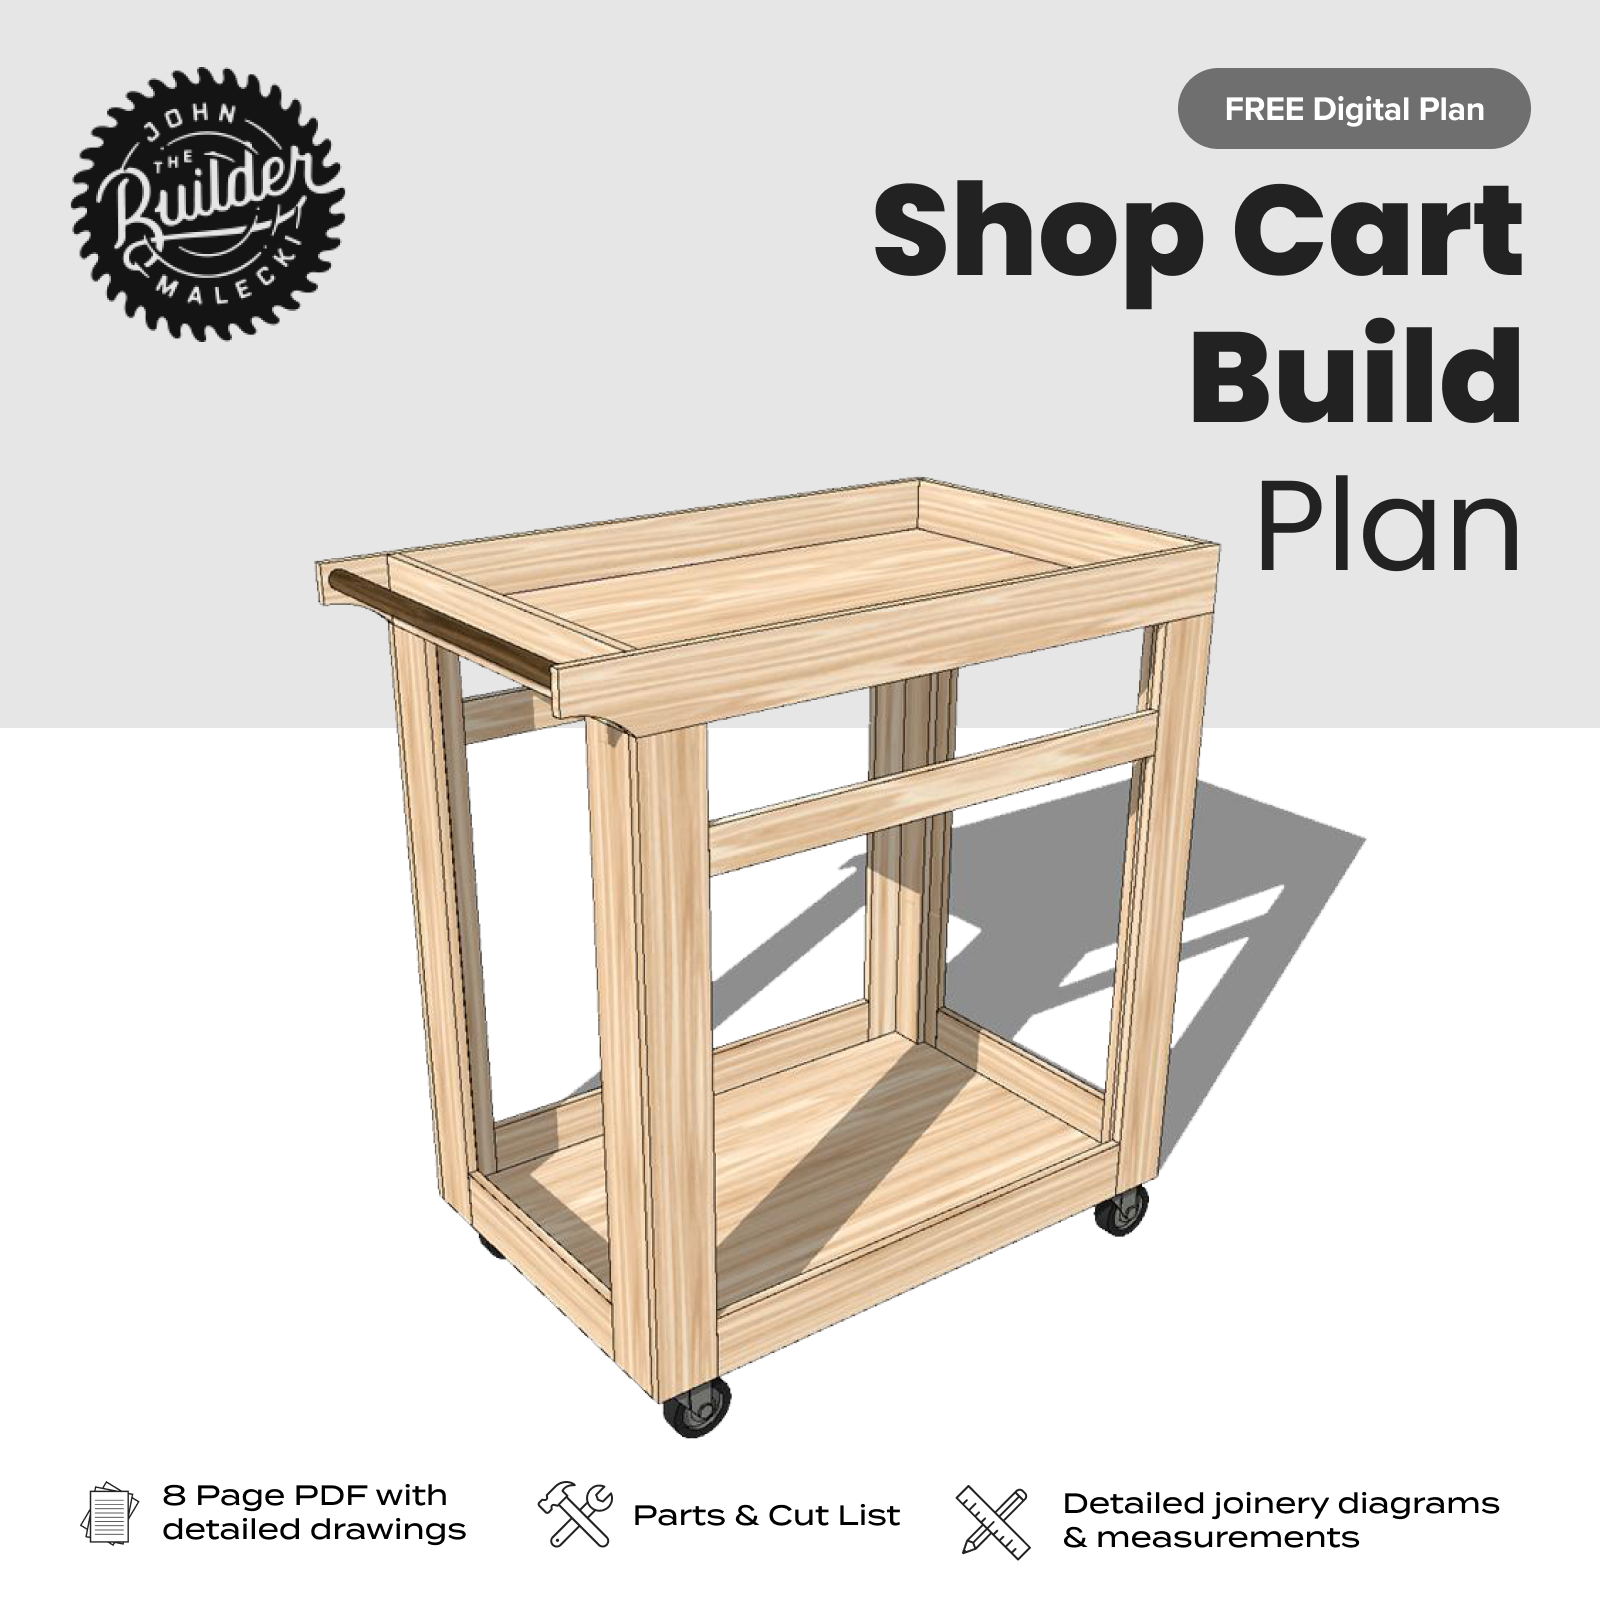 John Malecki - FREE DIY Shop Cart Plan